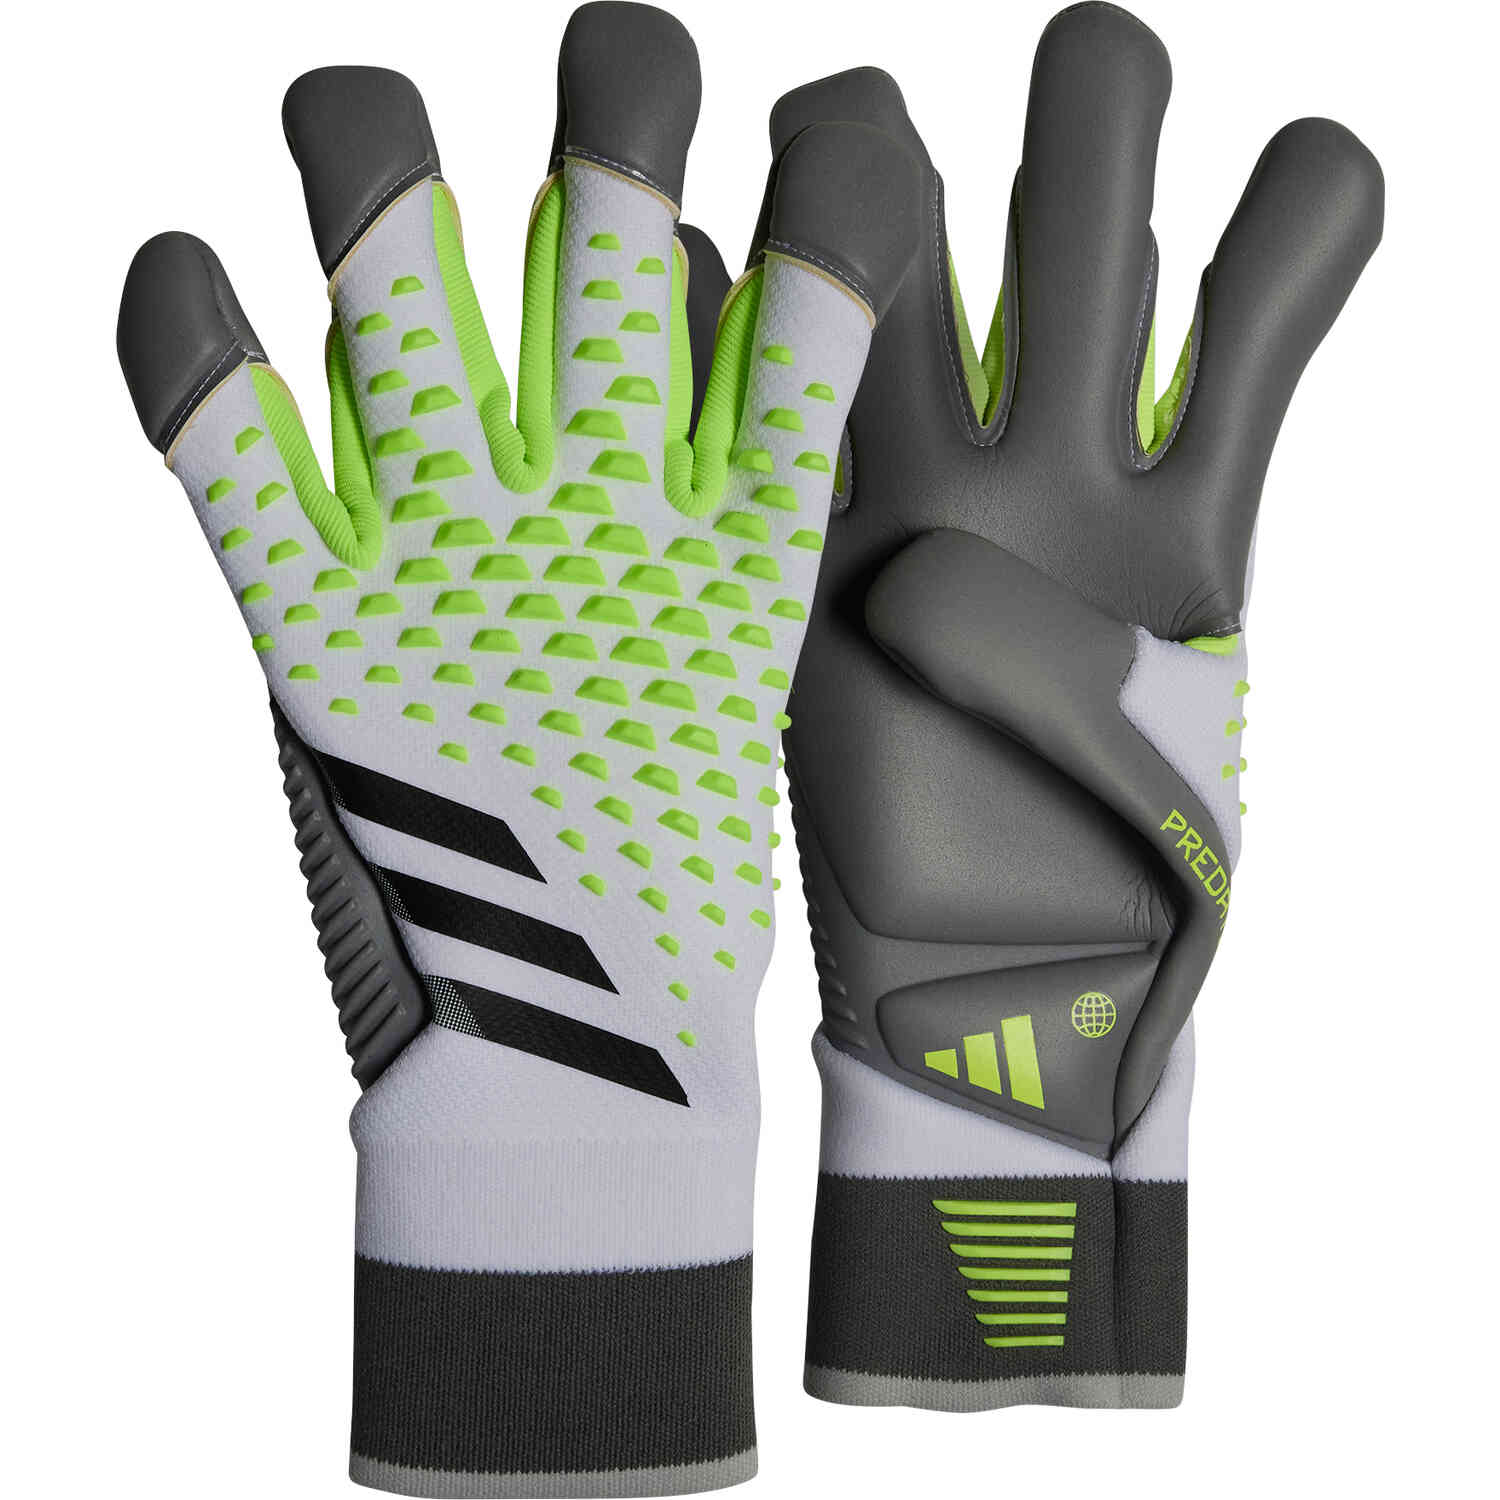 https://www.soccerpro.com/wp-content/uploads/ia0856_adidas_predator_pro_hybrid_cut_gk_gloves_white_lucid_lemon_with_black_01.jpg